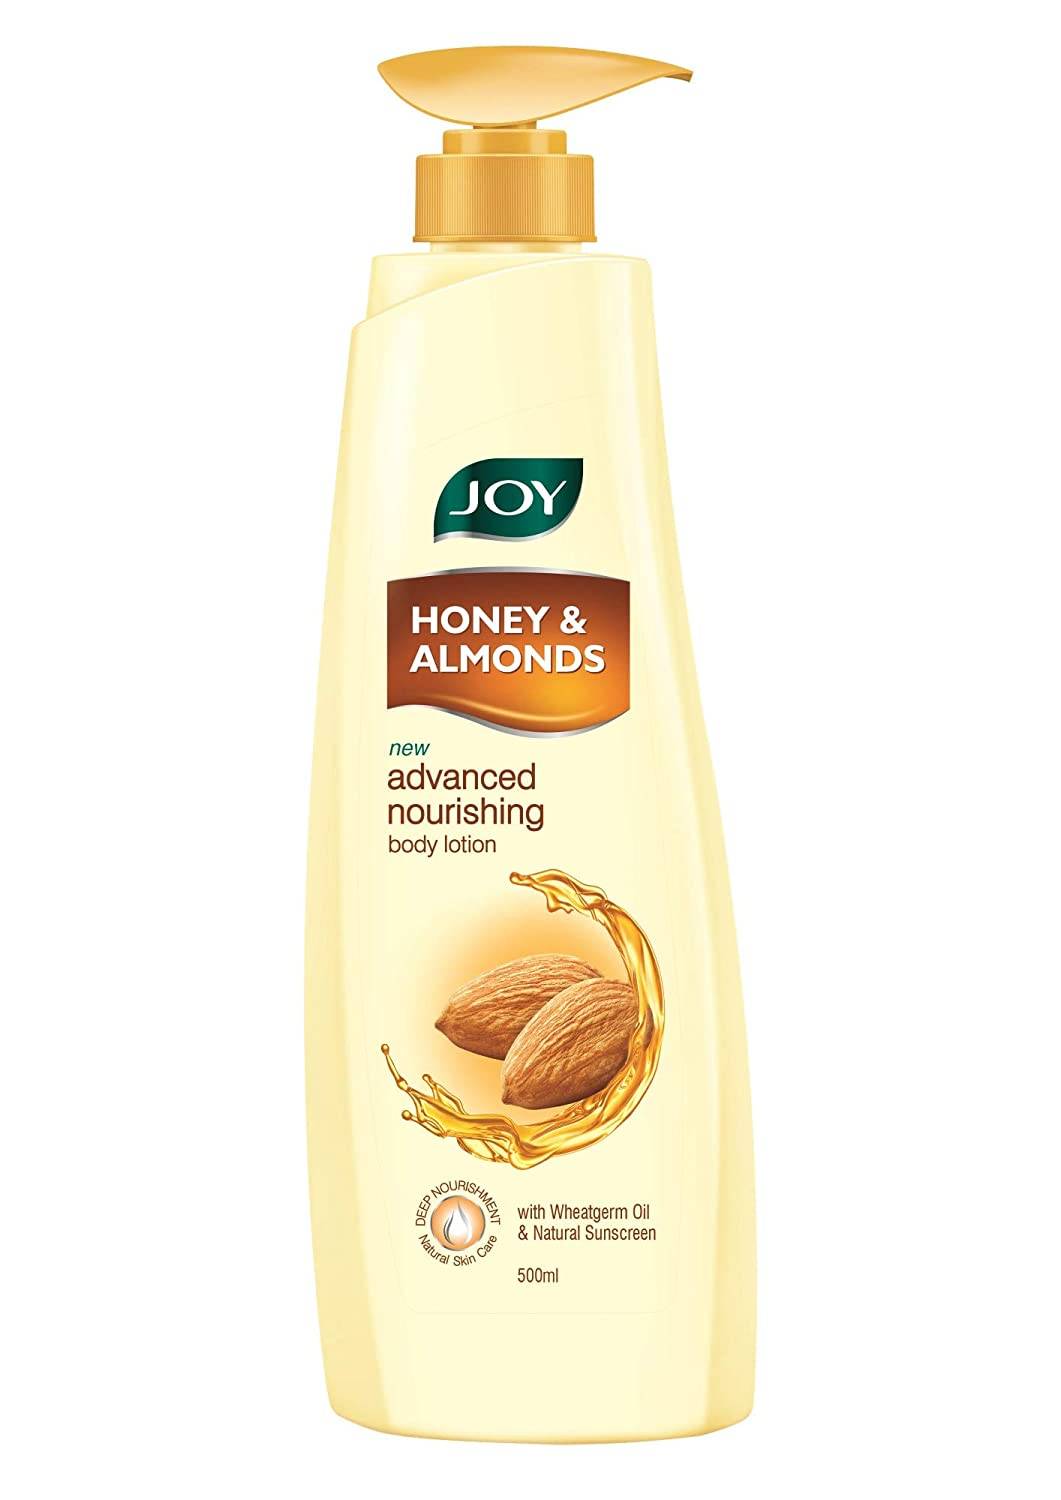 joy-honey&almond-nourishing-body-lotion-500ml